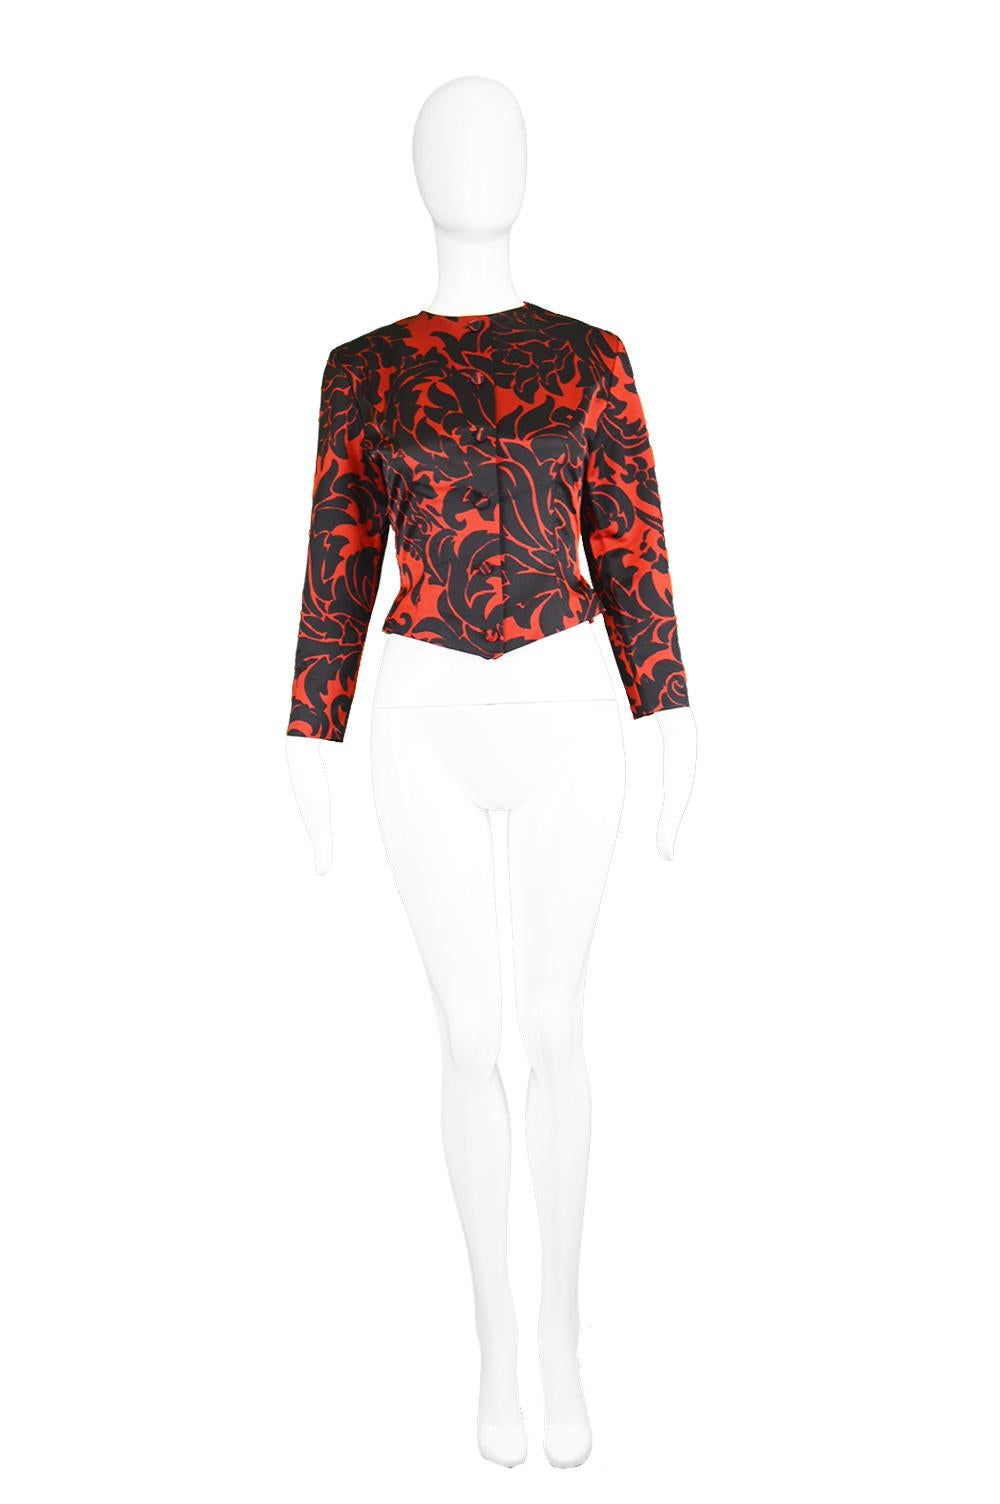 Vicky Tiel Couture Vintage Red & Black Fitted Damask Patterned Jacket, 1980s

Estimated Size: women's UK 8/ US 4/ EU 36. Please check all measurements. 
Bust - 32” / 81cm
Waist - 26” / 66cm
Length (Shoulder to Hem) - 18” / 46cm
Shoulder to Shoulder